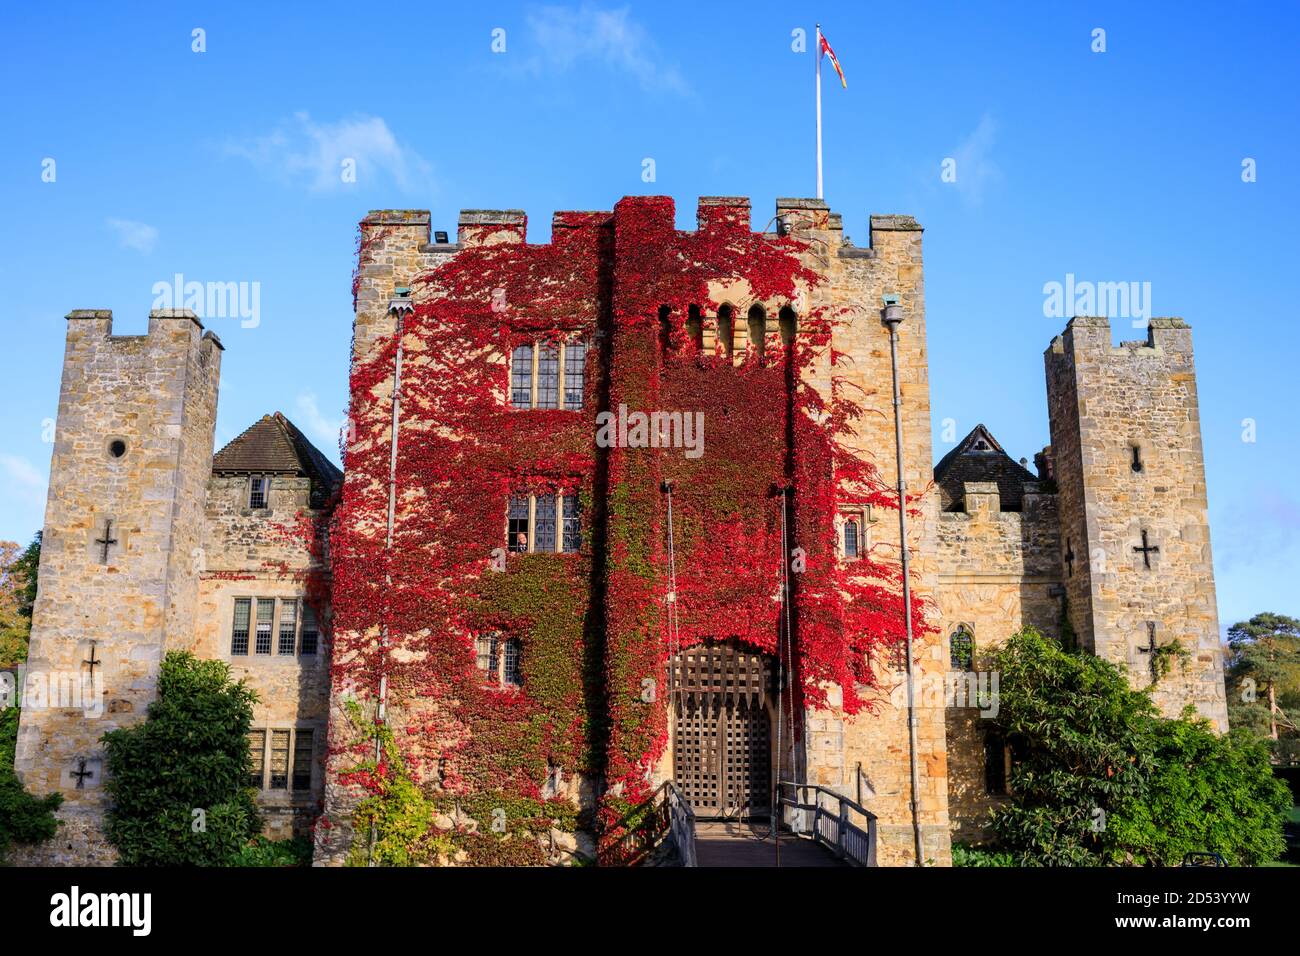 Hever Castle in Kent, Großbritannien. Die Burg stammt aus dem 125. Jahrhundert und war einst das Elternhaus von Anne Boleyn, der zweiten Frau von Heinrich VIII. Und Mutter von Elisabeth I., inmitten eines   Hektar großen, herrlichen Geländes. Stockfoto